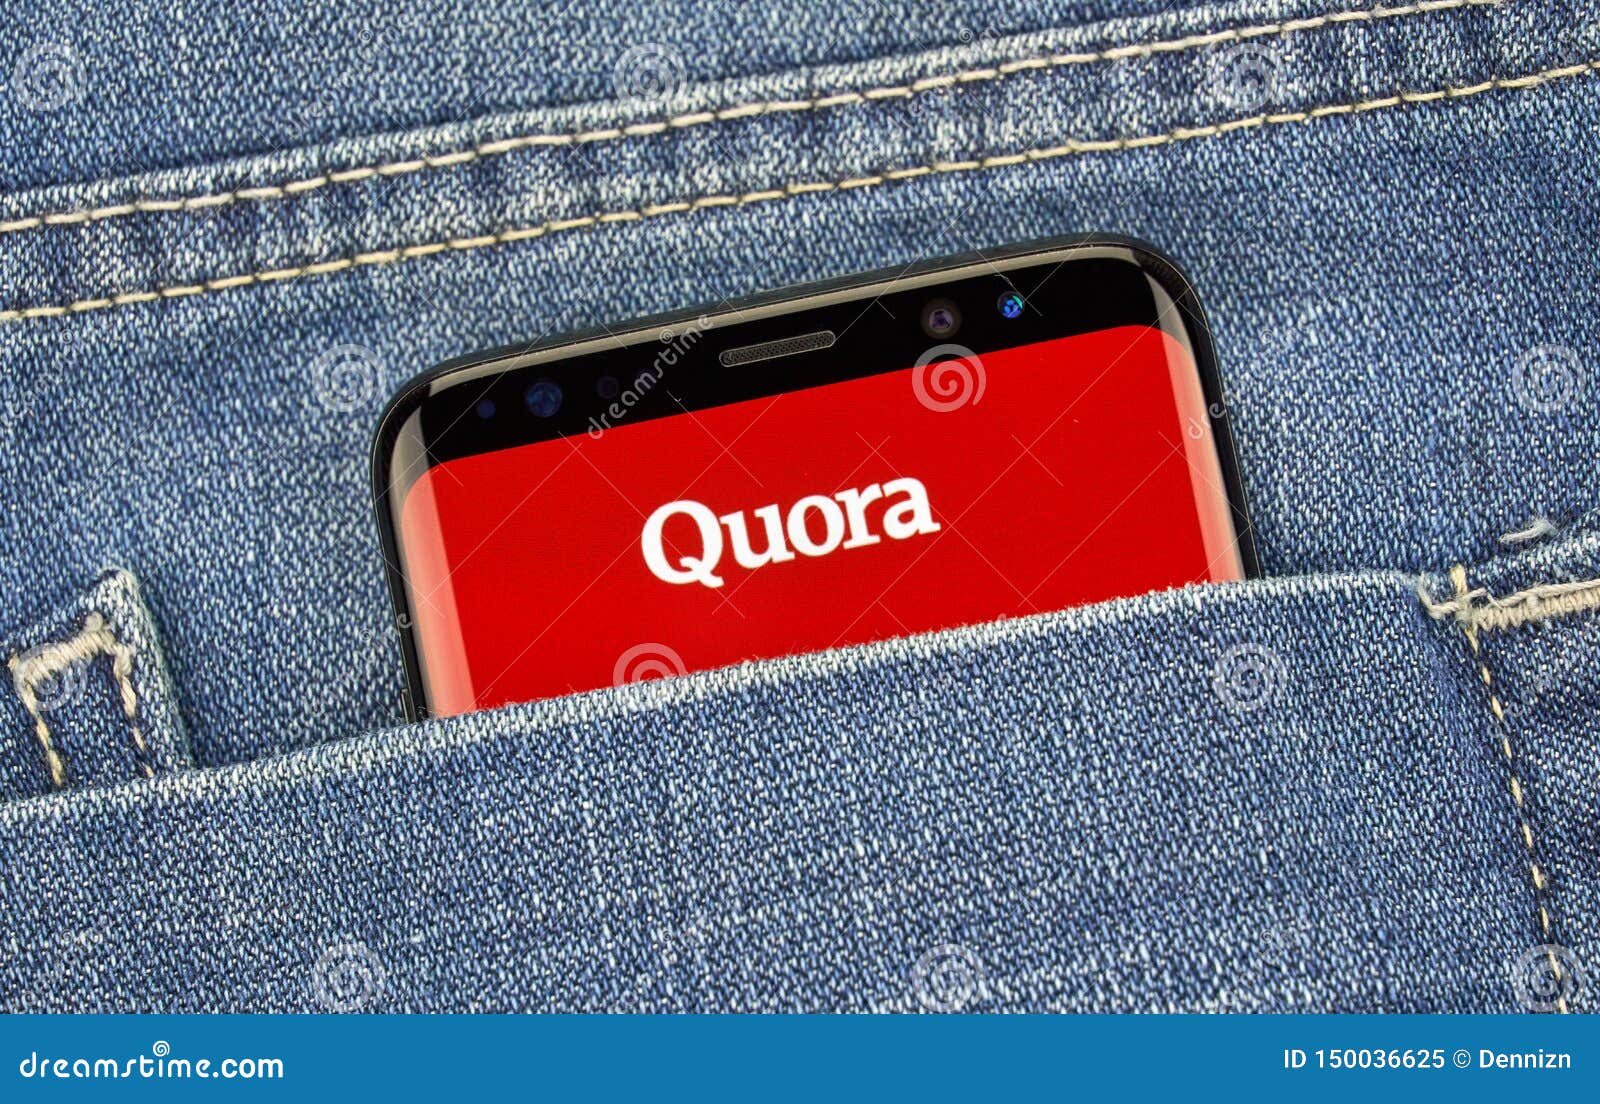 Iphone Or Samsung Quora